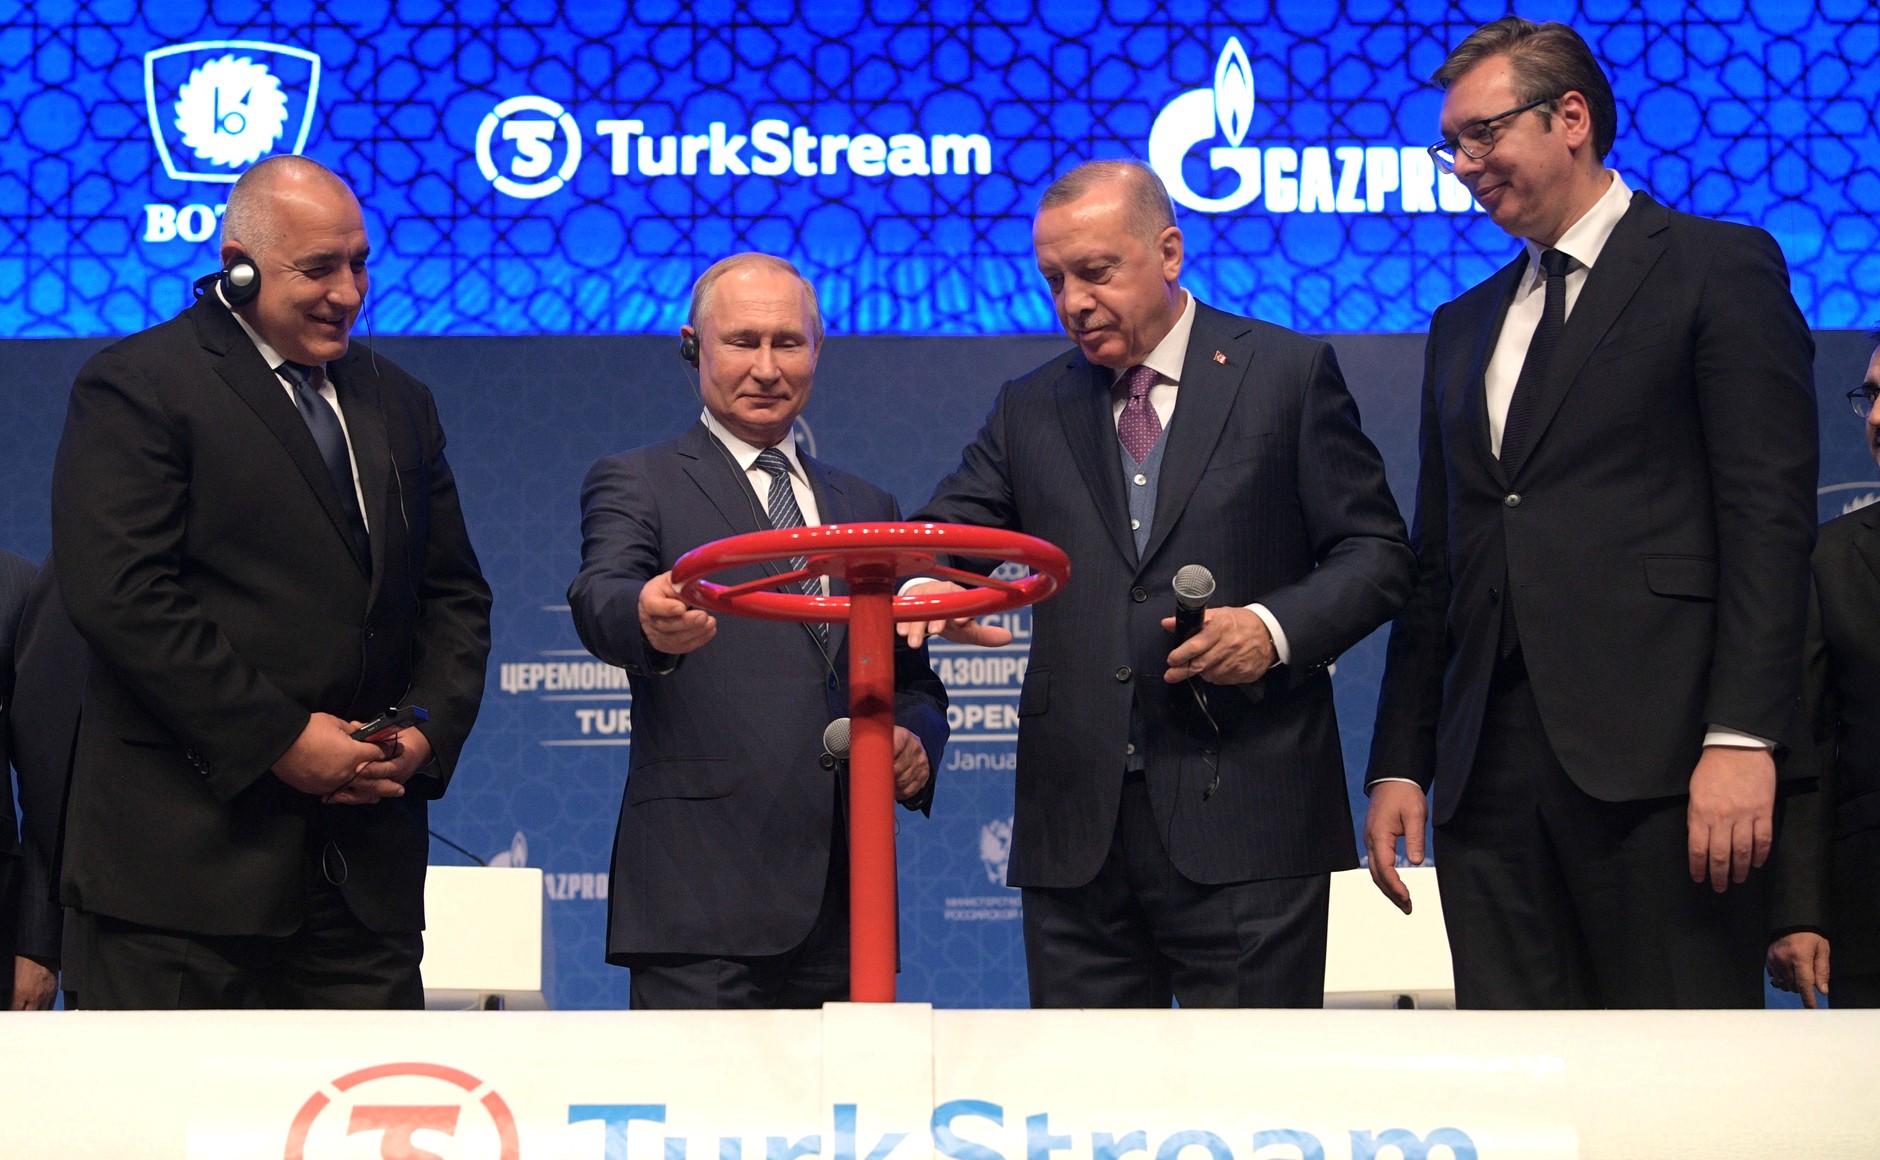 Uroczystość uruchomienia Turkish Stream fot. Kremlin.ru